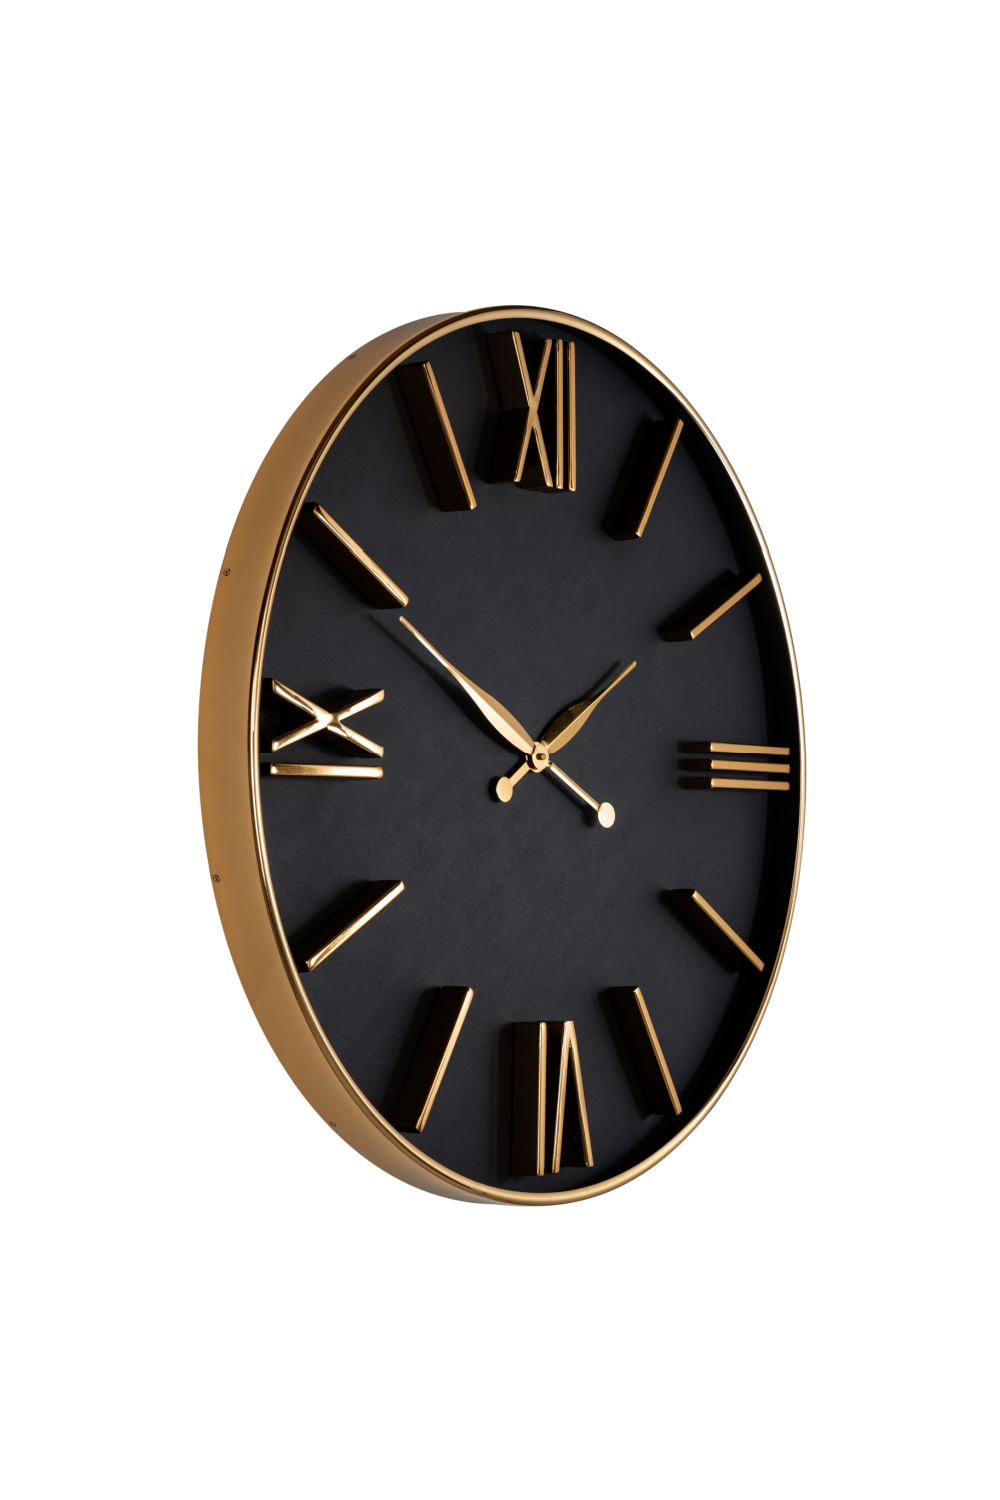 Gold Framed Black Dial Clock | OROA Lyem | Oroa.com